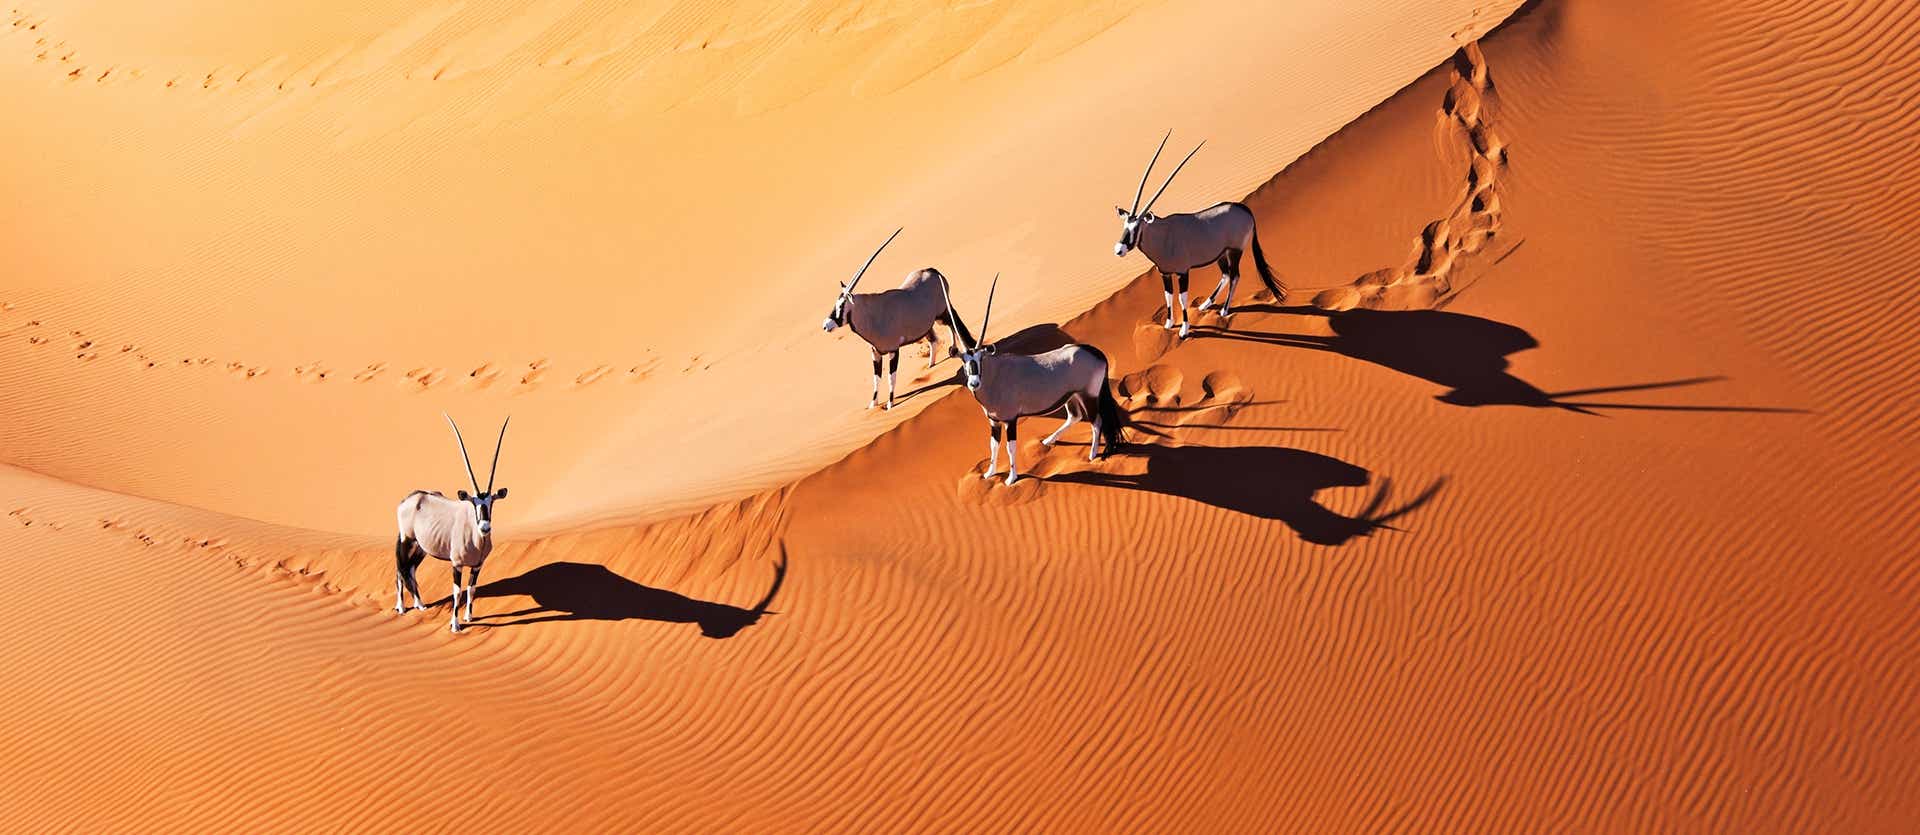 Oryx <span class="iconos separador"></span> Desierto del Namib <span class="iconos separador"></span> Namibia